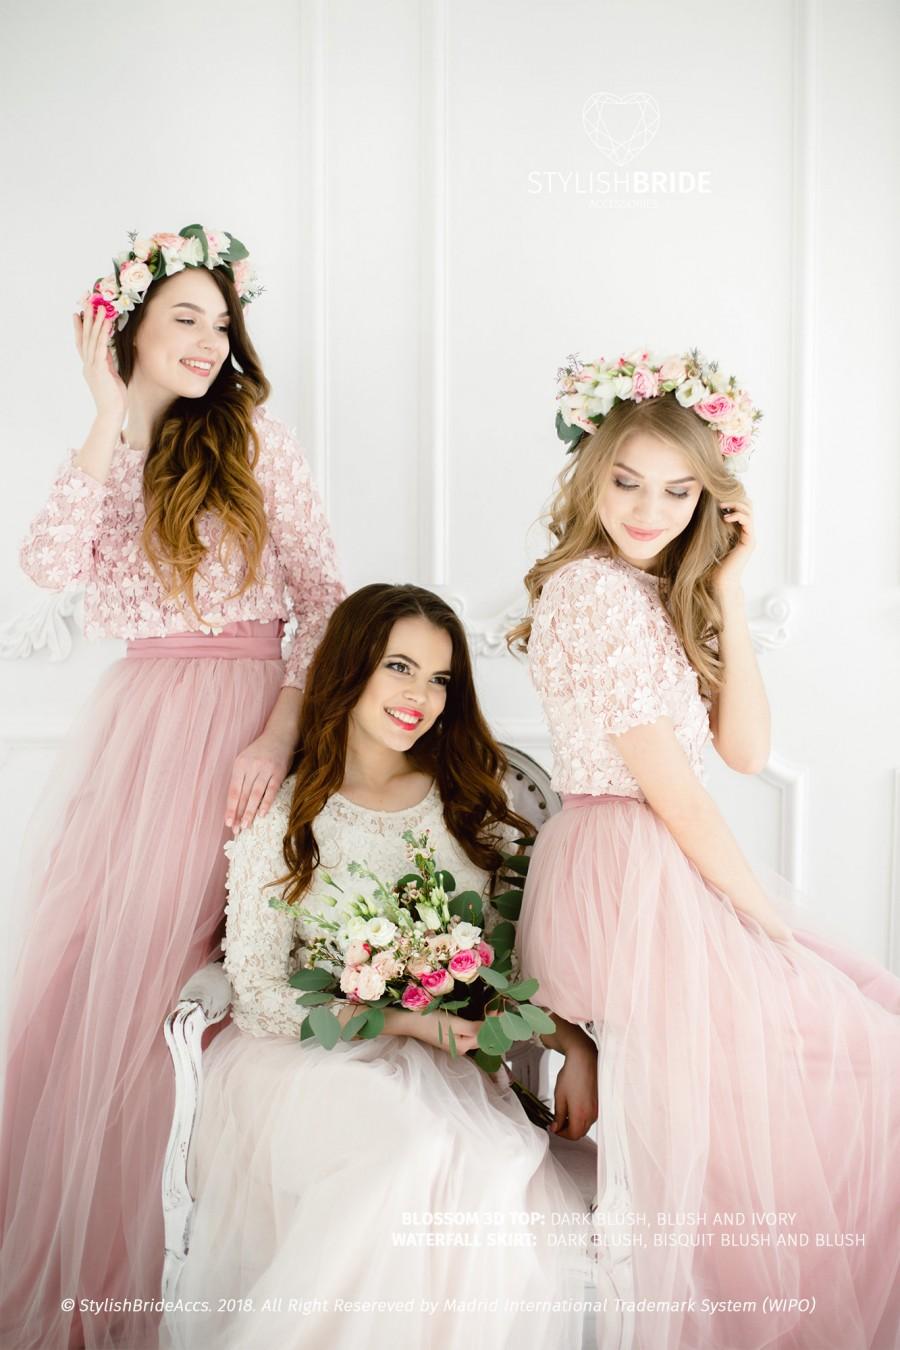 زفاف - Blossom Lace Dress, Top and Tulle Skirt in Blush Ivory color, Bridesmaids blossom from 3dlace, Blush Prom Dresses Plus Size, Engagement top